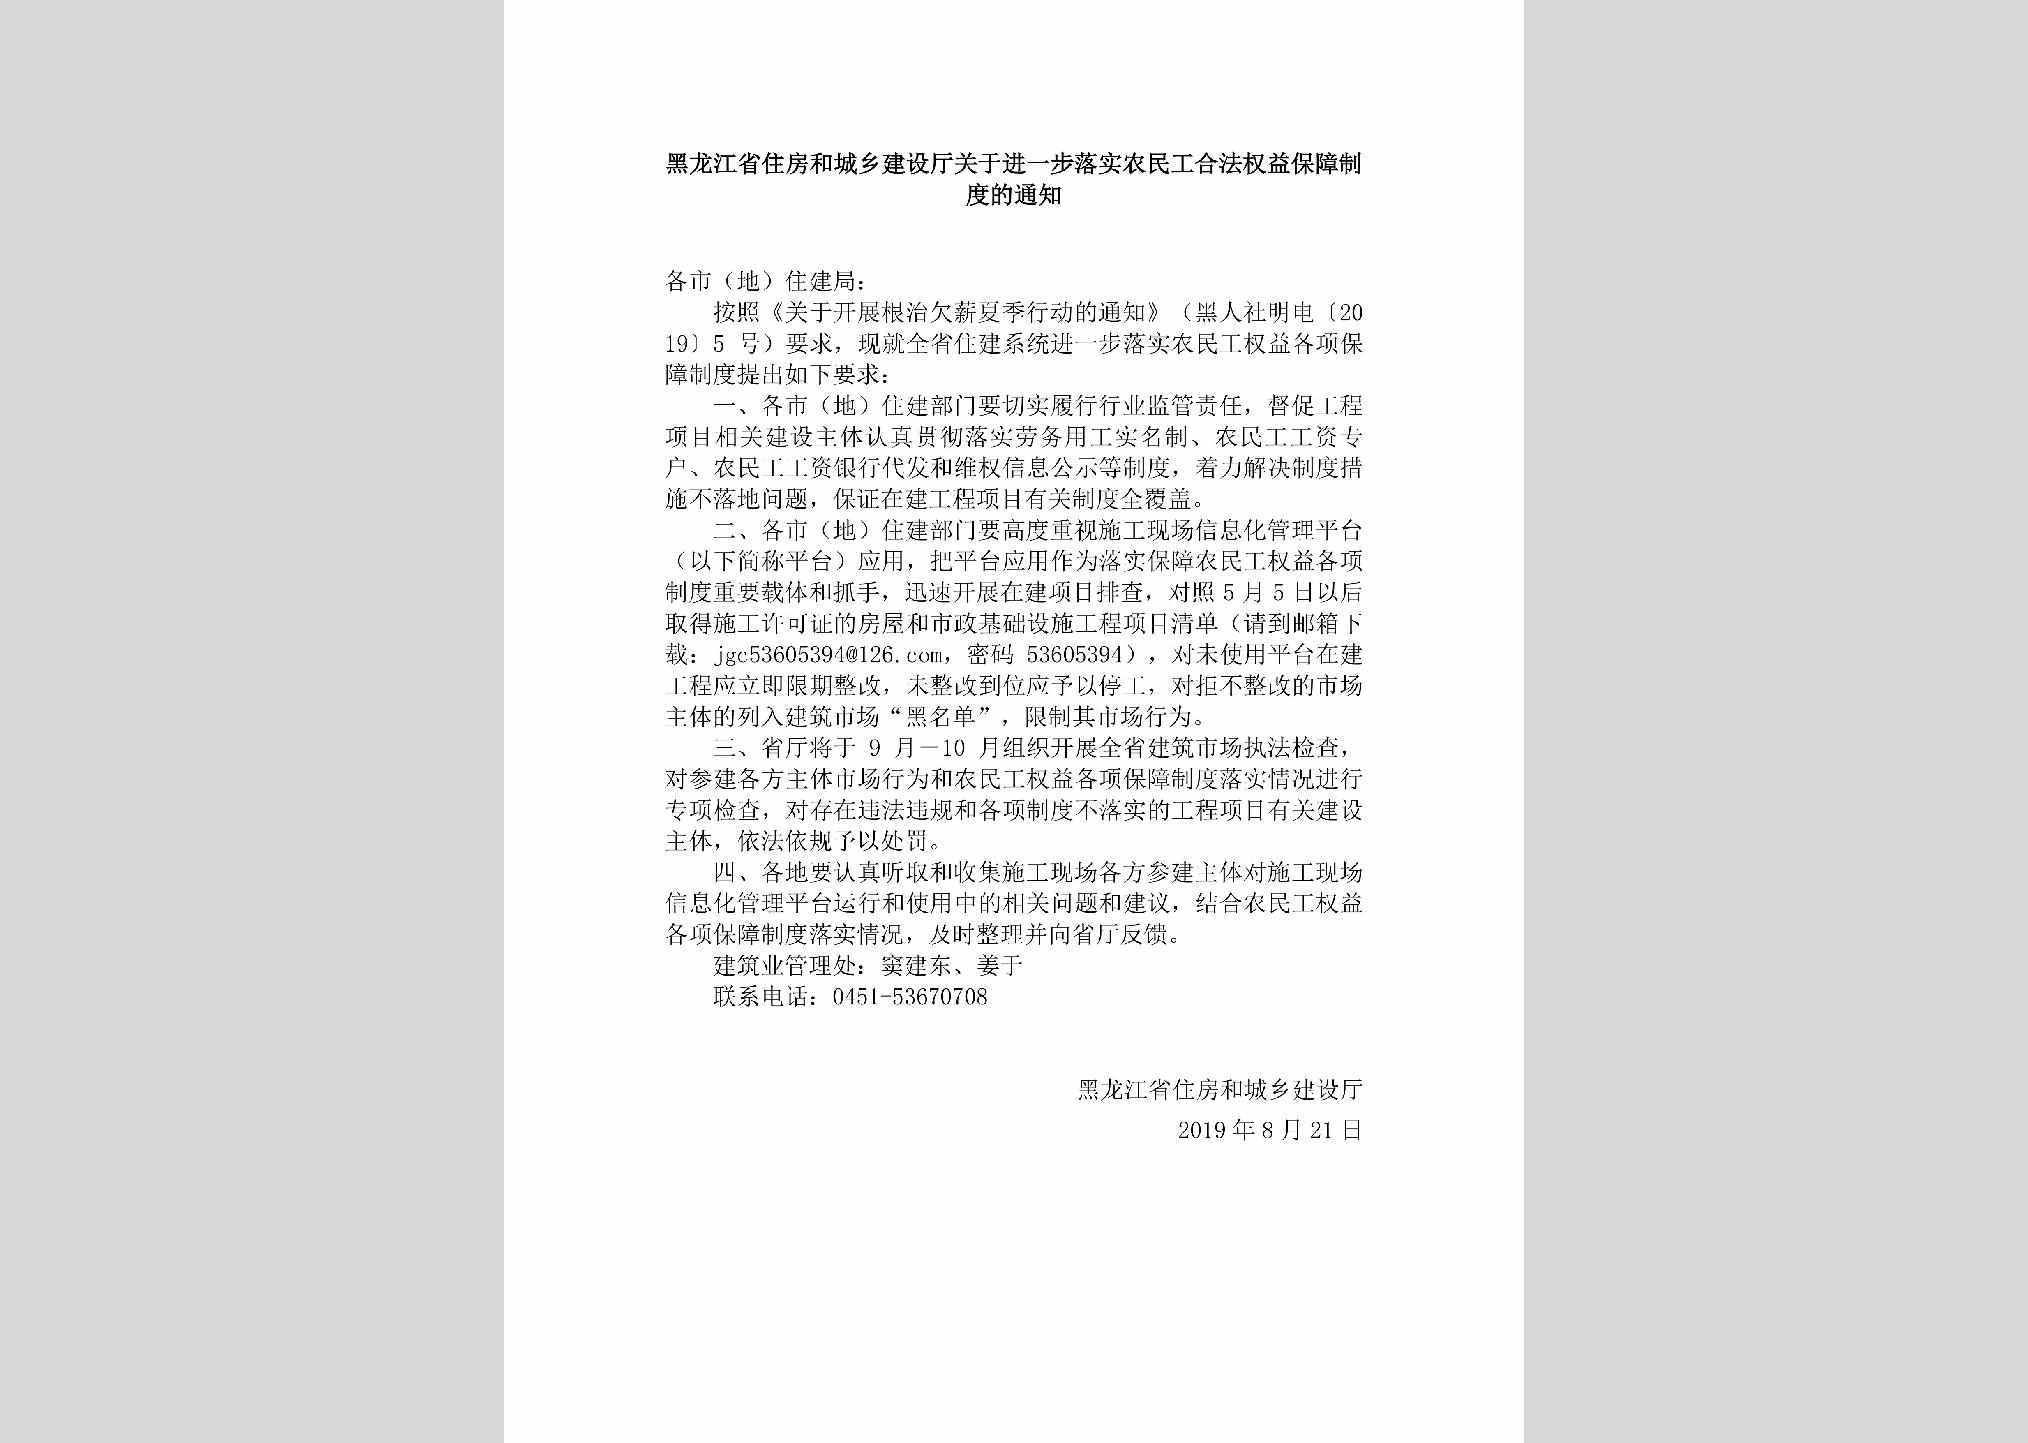 HLJ-JYBLSNMG-2019：黑龙江省住房和城乡建设厅关于进一步落实农民工合法权益保障制度的通知